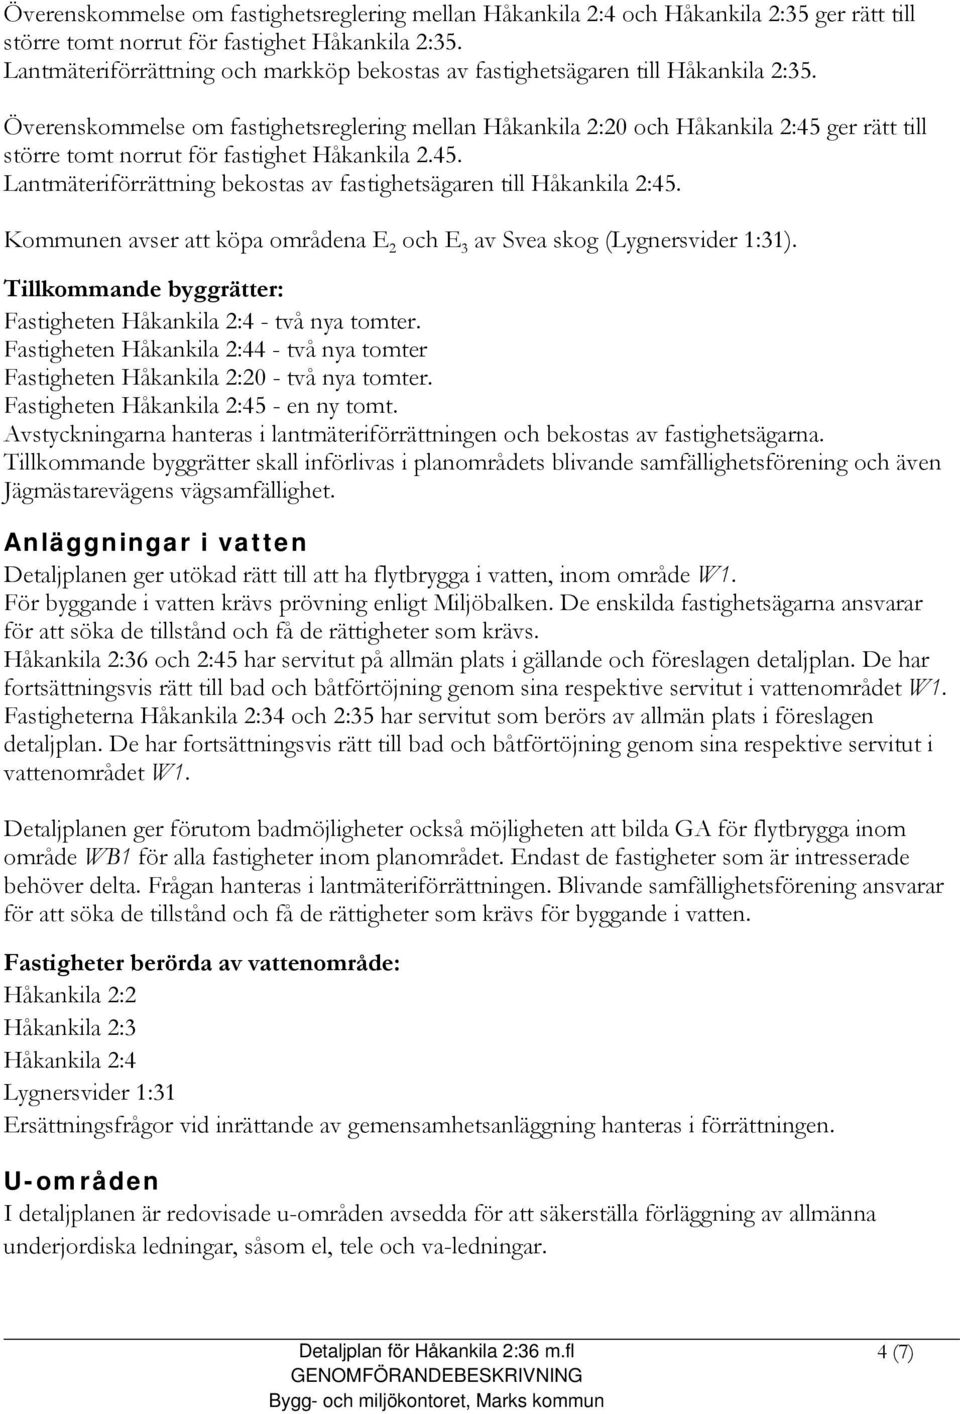 Överenskommelse om fastighetsreglering mellan Håkankila 2:20 och Håkankila 2:45 ger rätt till större tomt norrut för fastighet Håkankila 2.45. Lantmäteriförrättning bekostas av fastighetsägaren till Håkankila 2:45.